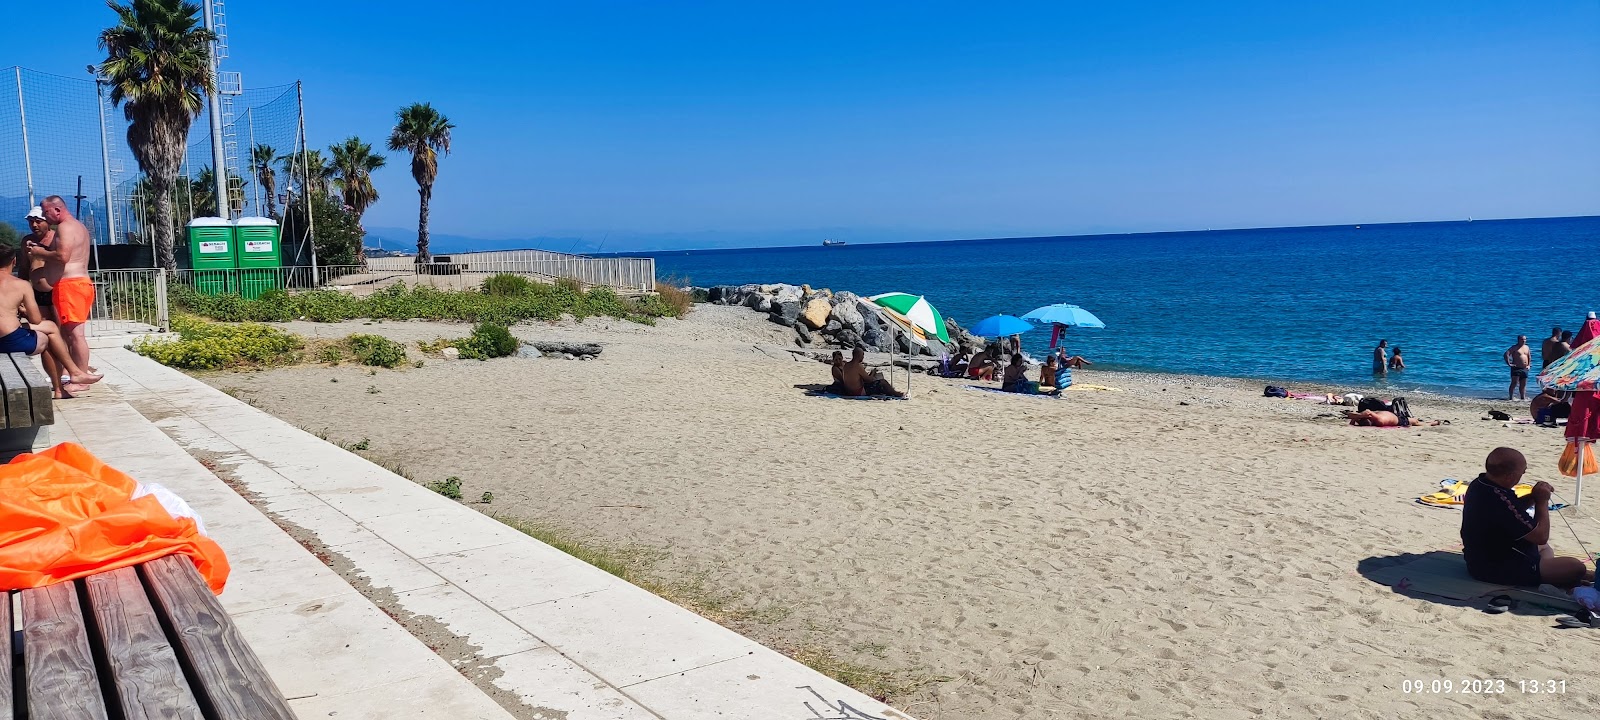 Foto de Spiaggia di Zinola com alto nível de limpeza